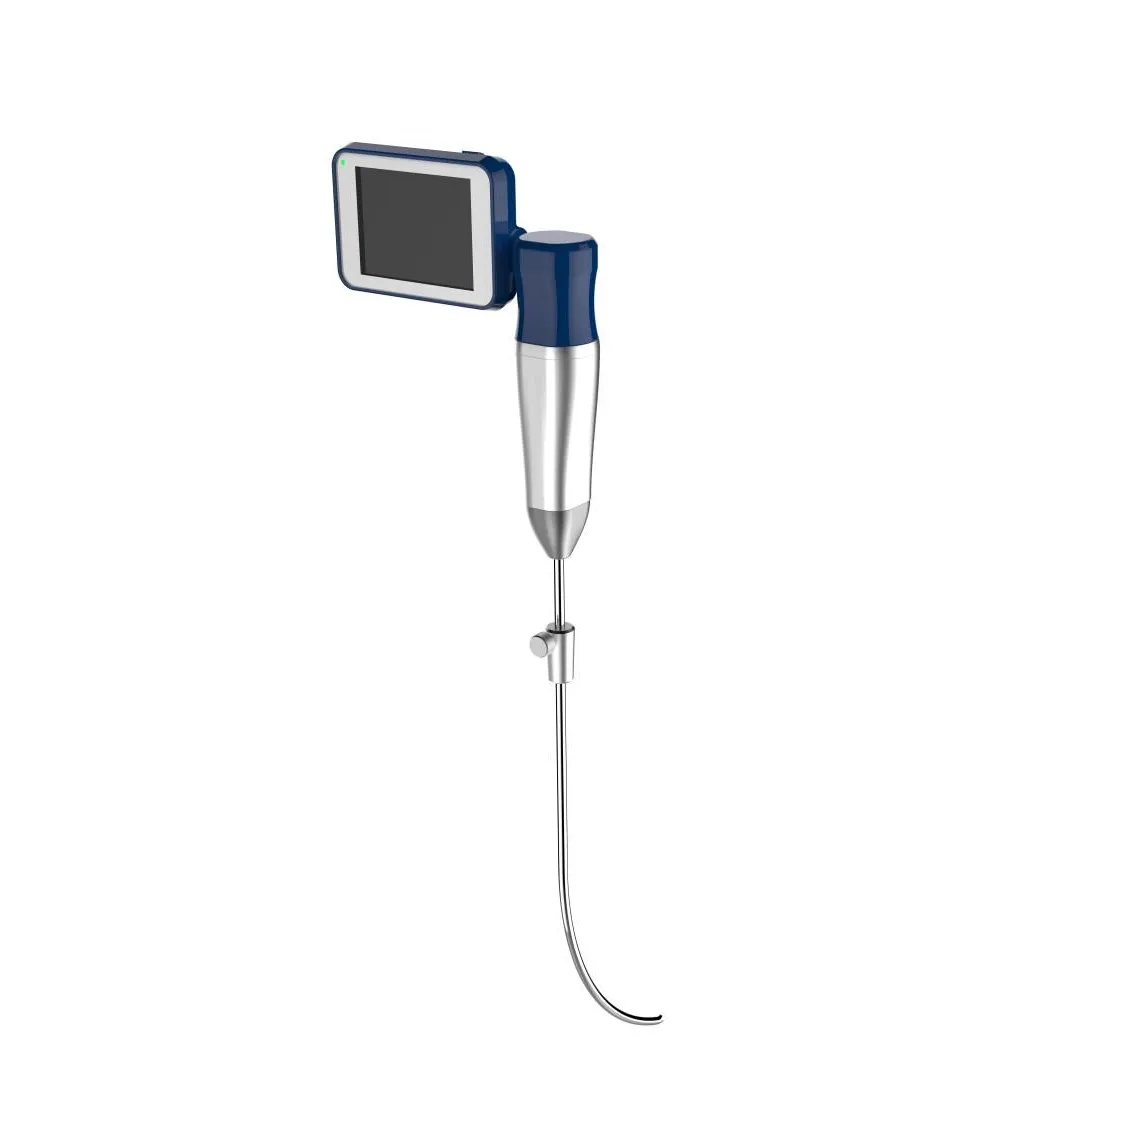 HIGH DEFINITION Camera Anesthesia Flexible Endoscope Ent/Fiberoptic Laryngoscope MSLVL06